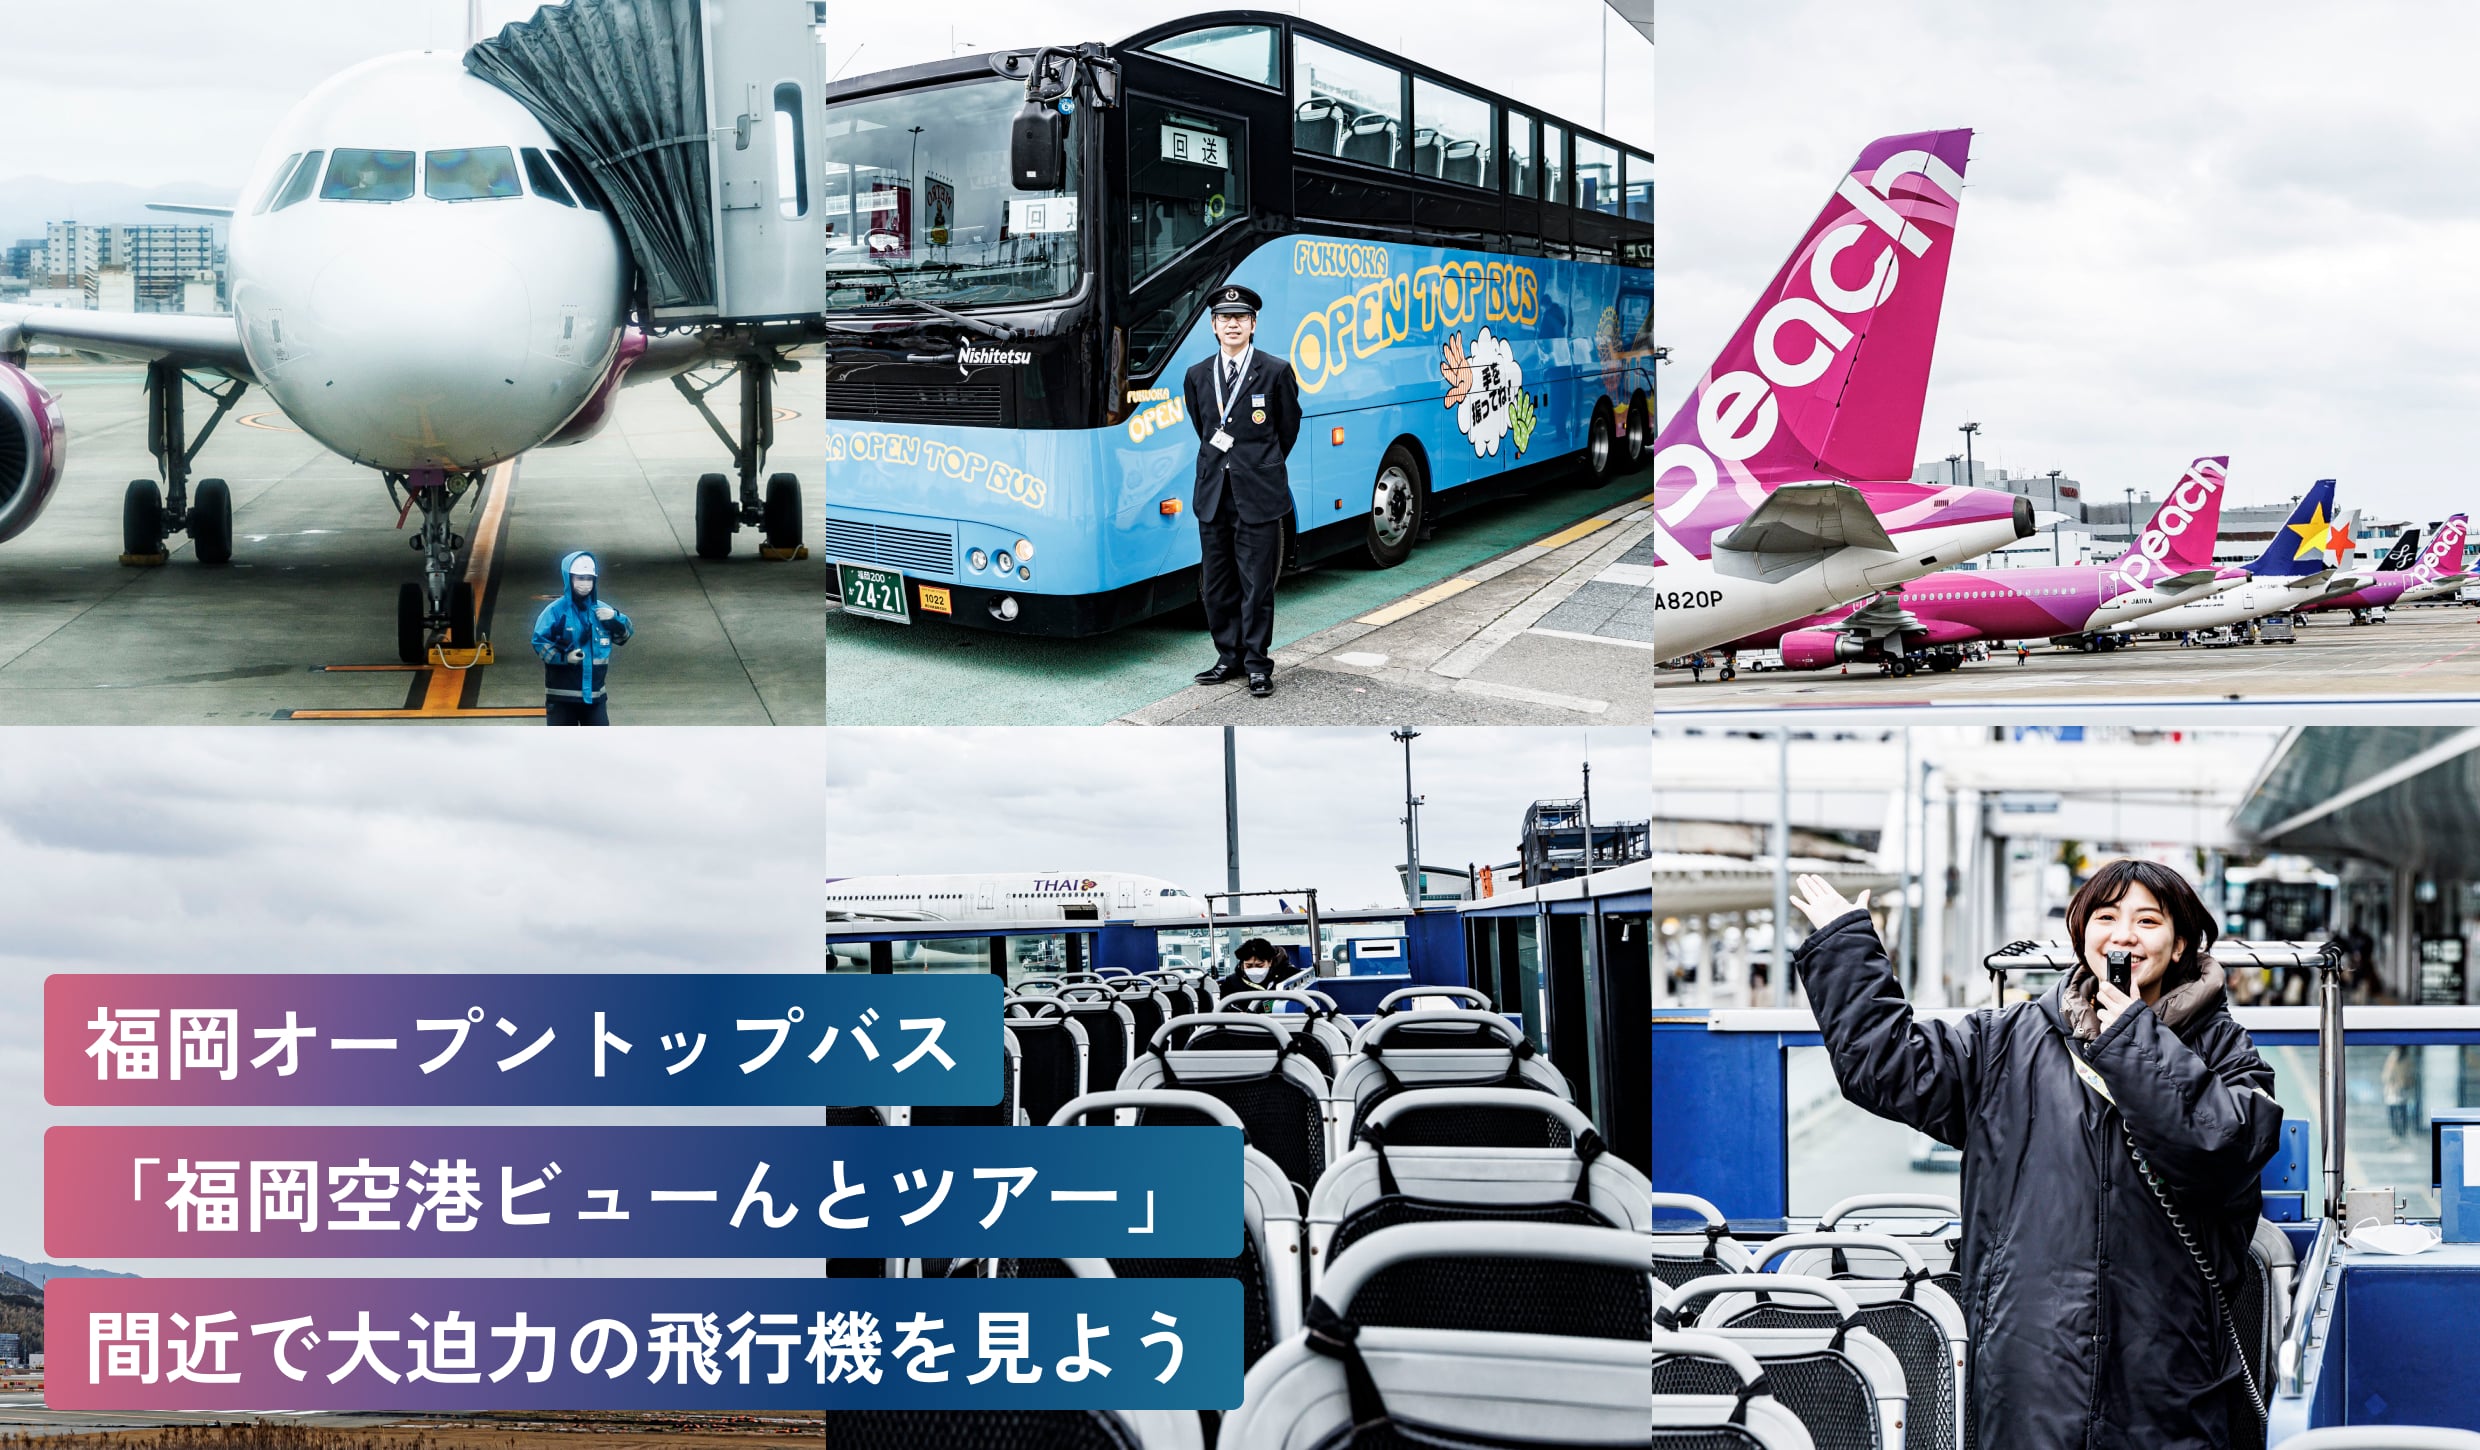 福岡オープントップバス
「福岡空港ビューんとツアー」
間近で大迫力の飛行機を見よう